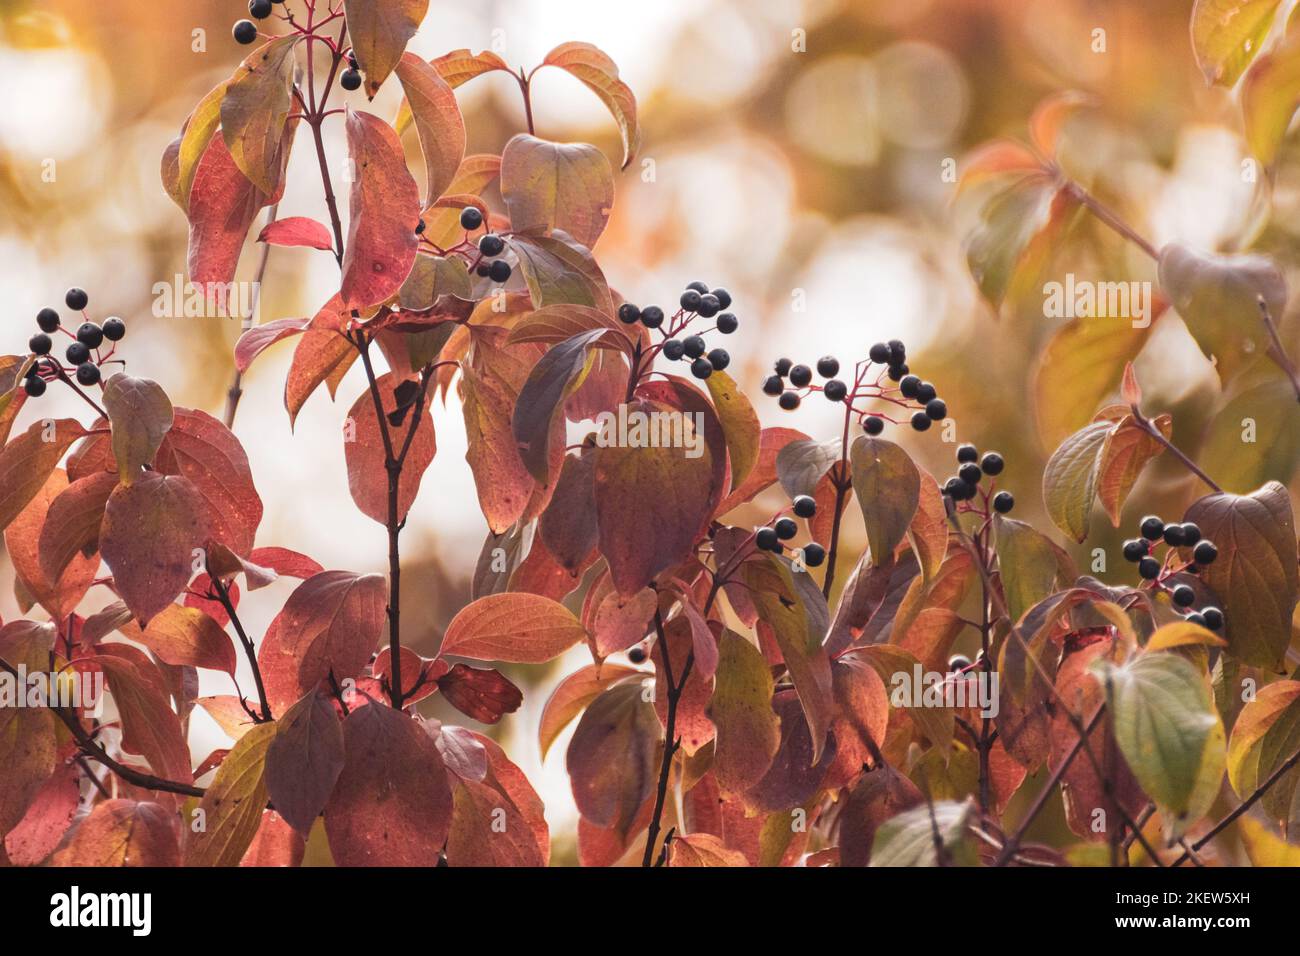 Cornus sanguinea, der gewöhnliche Dogwood Strauch, verzweigt mit schwarzen Beeren und roten Blättern. Herbstbotanik mit verschwommenem Hintergrund Stockfoto